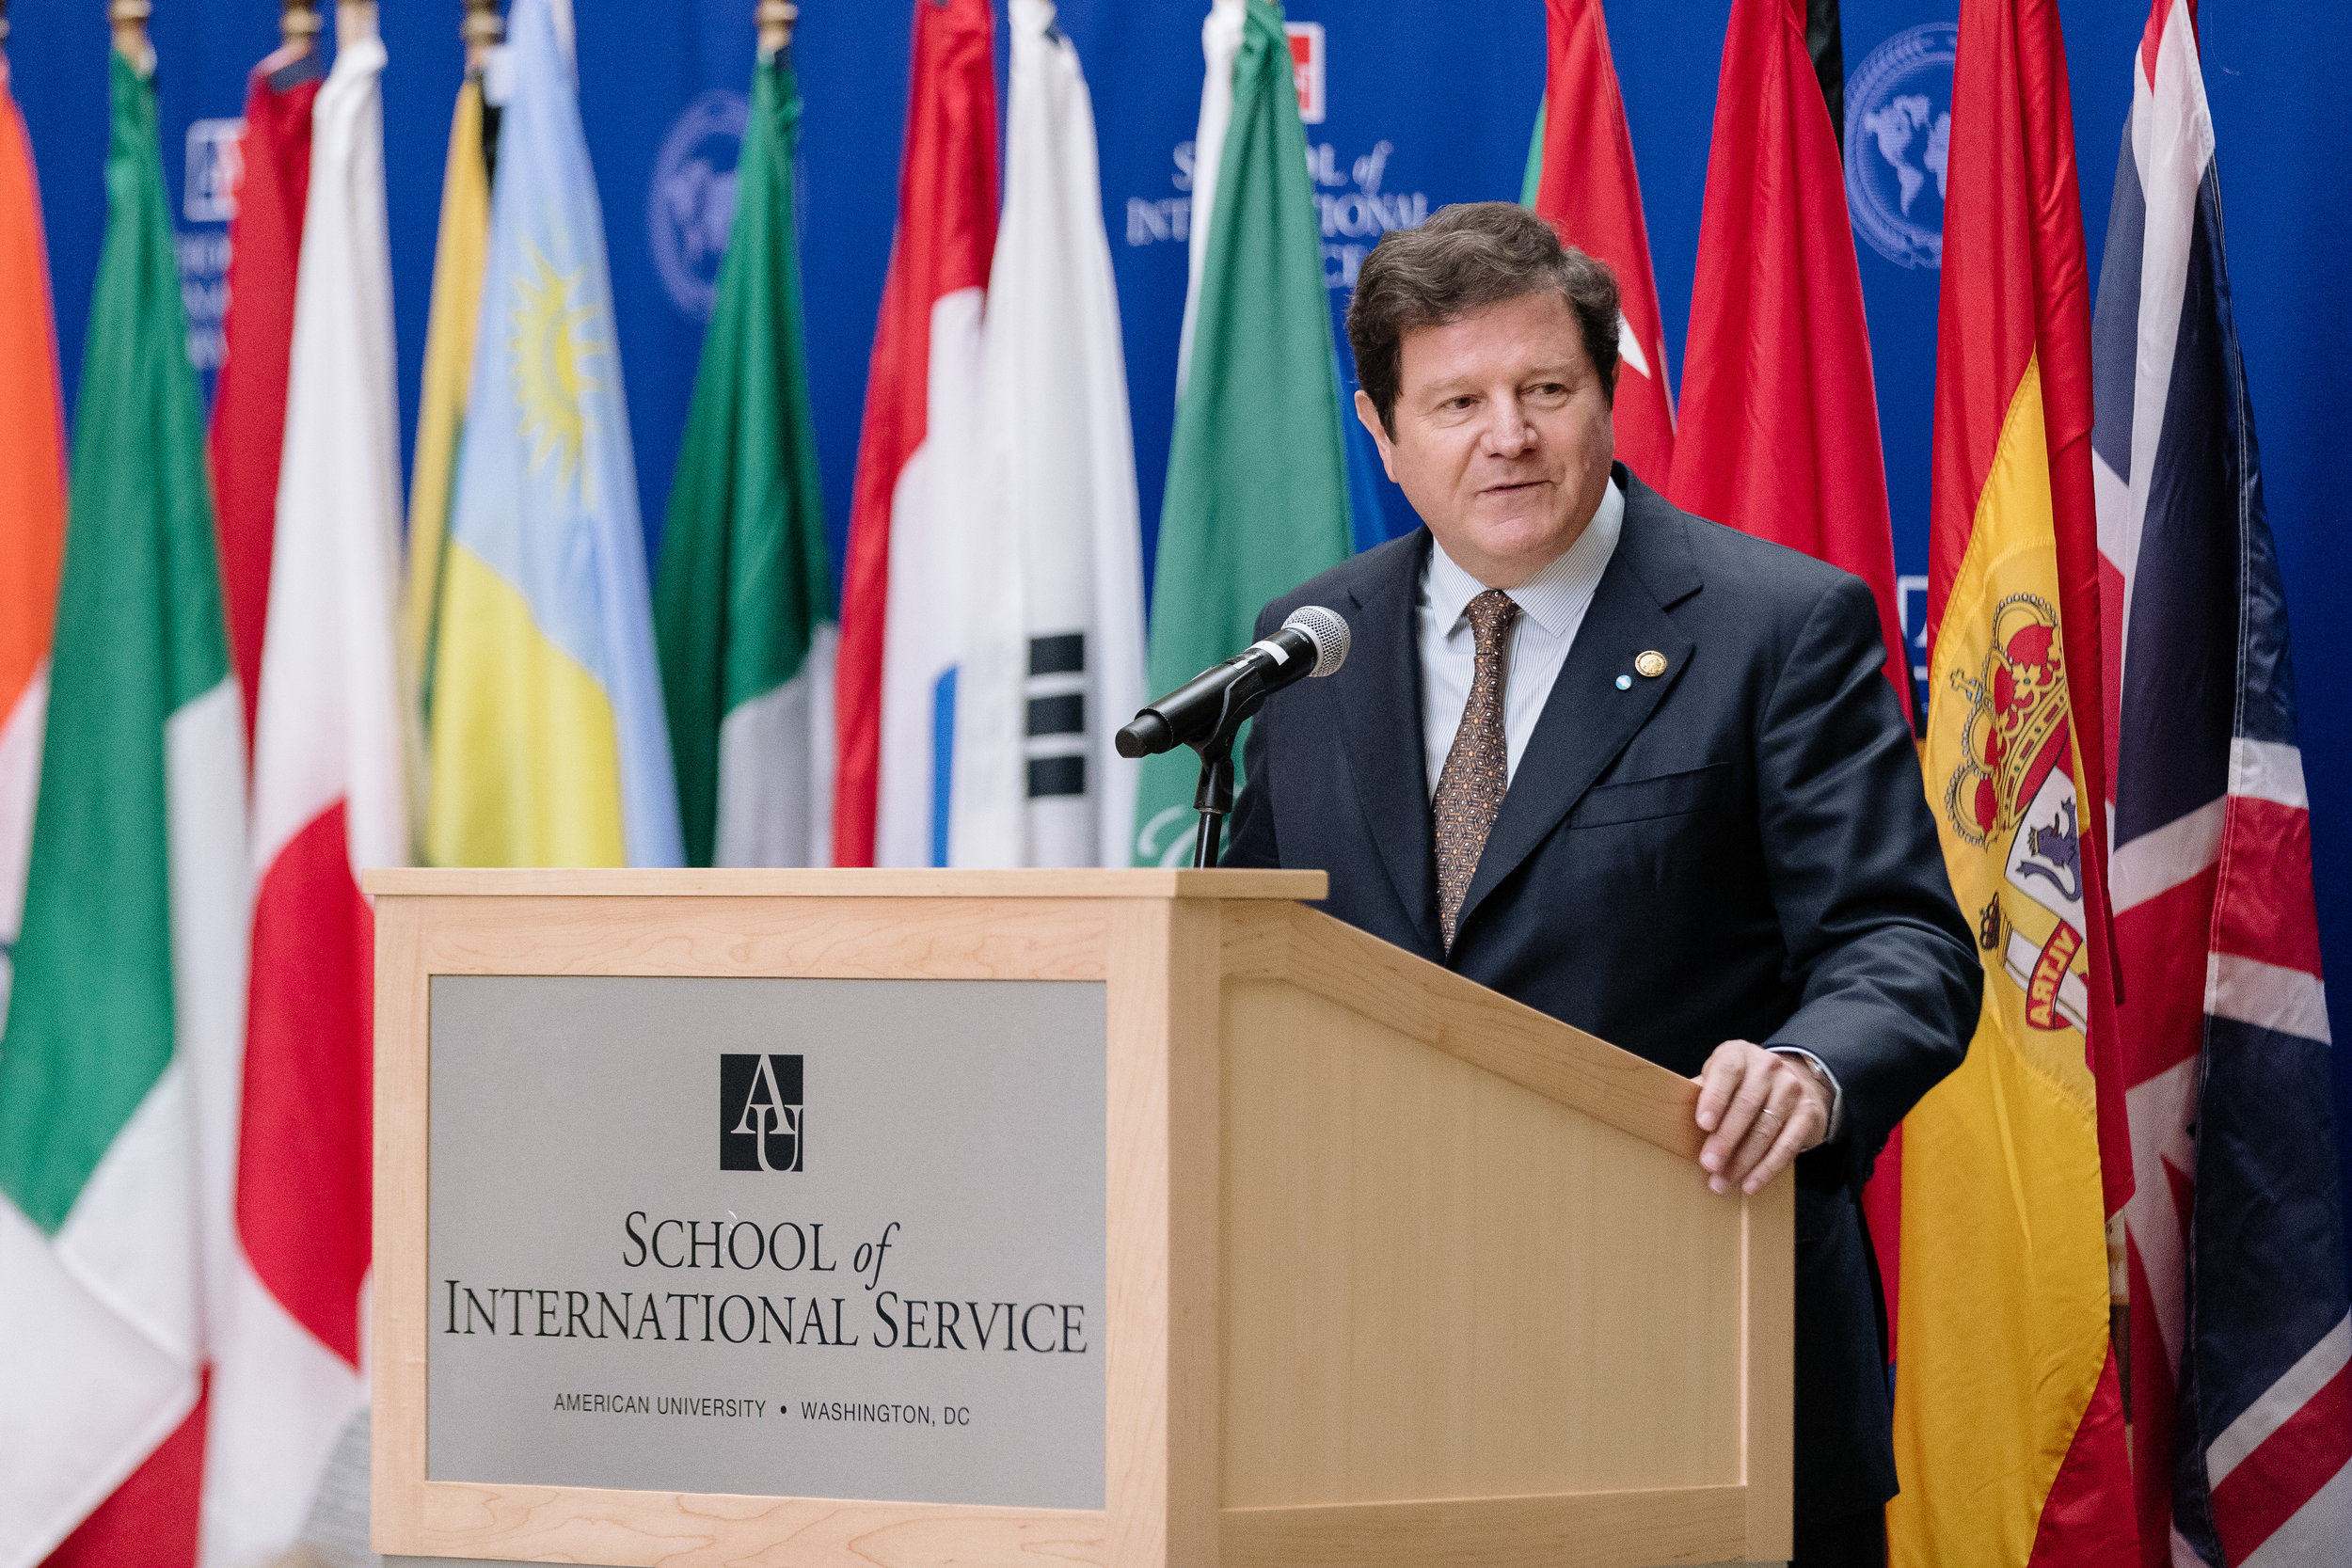 Fernando Oris De Roa, Argentine Ambassador to the US